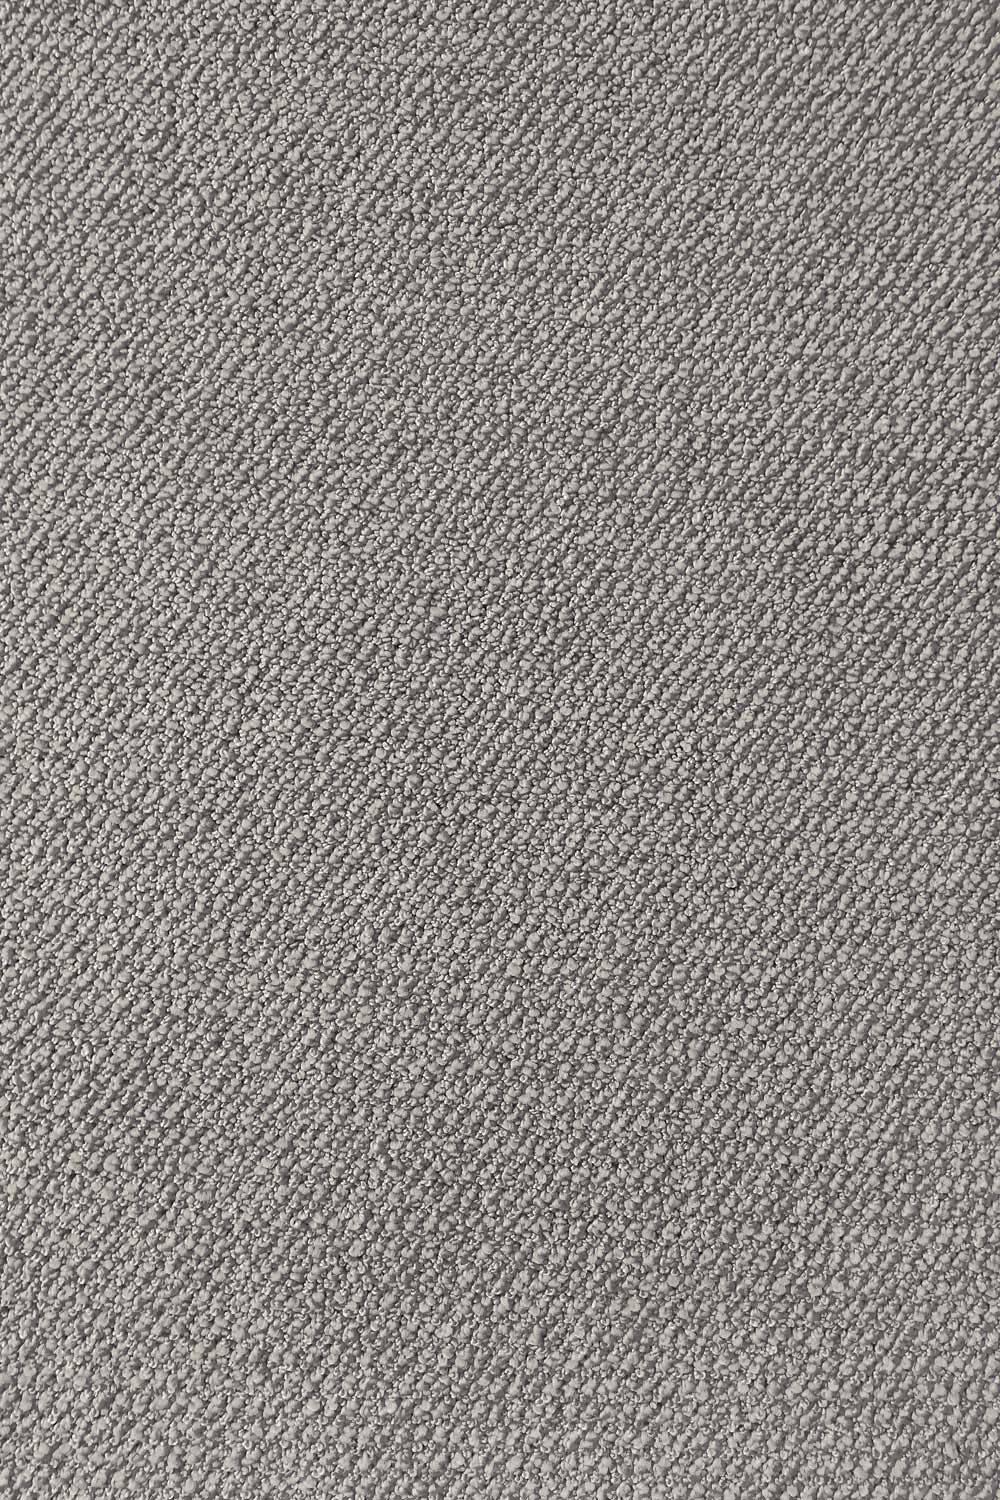 Metrážny koberec Corvino 93 400 cm